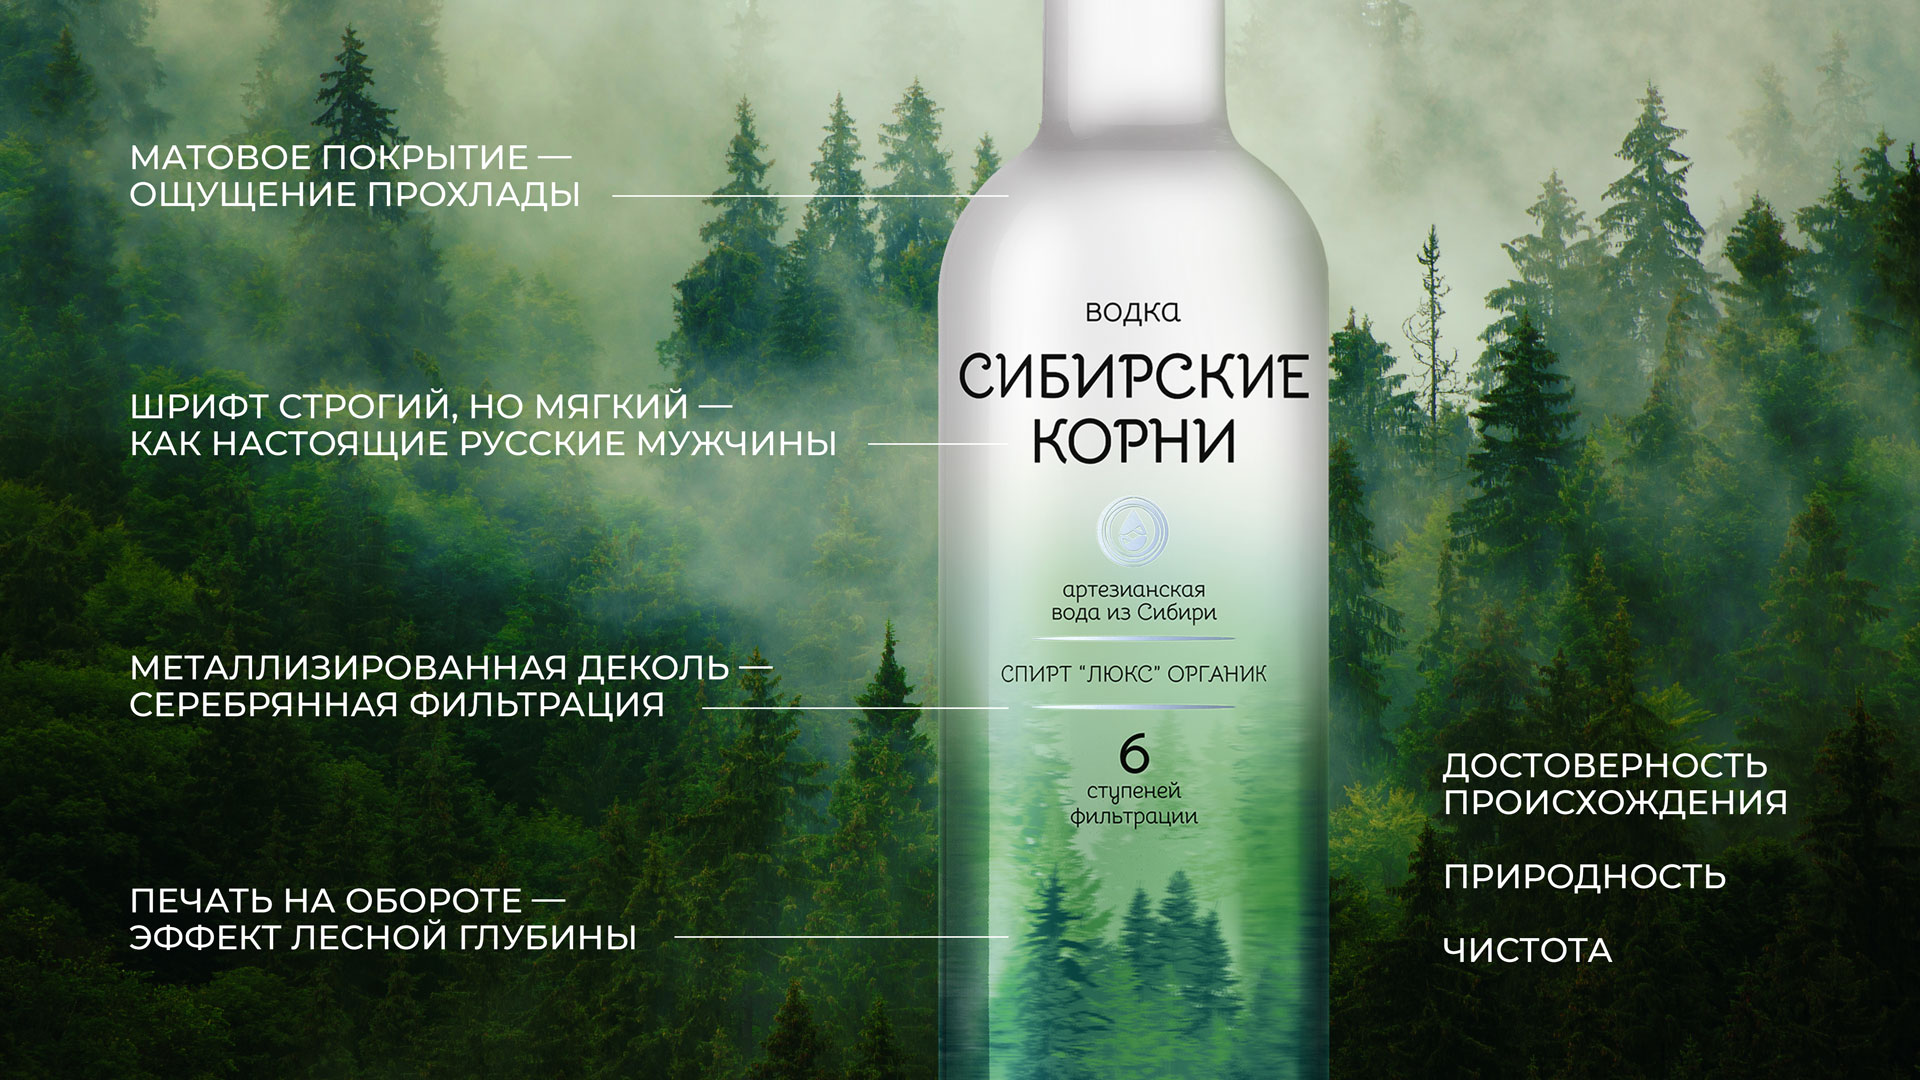 Дизайн упаковки водки Сибирские корни